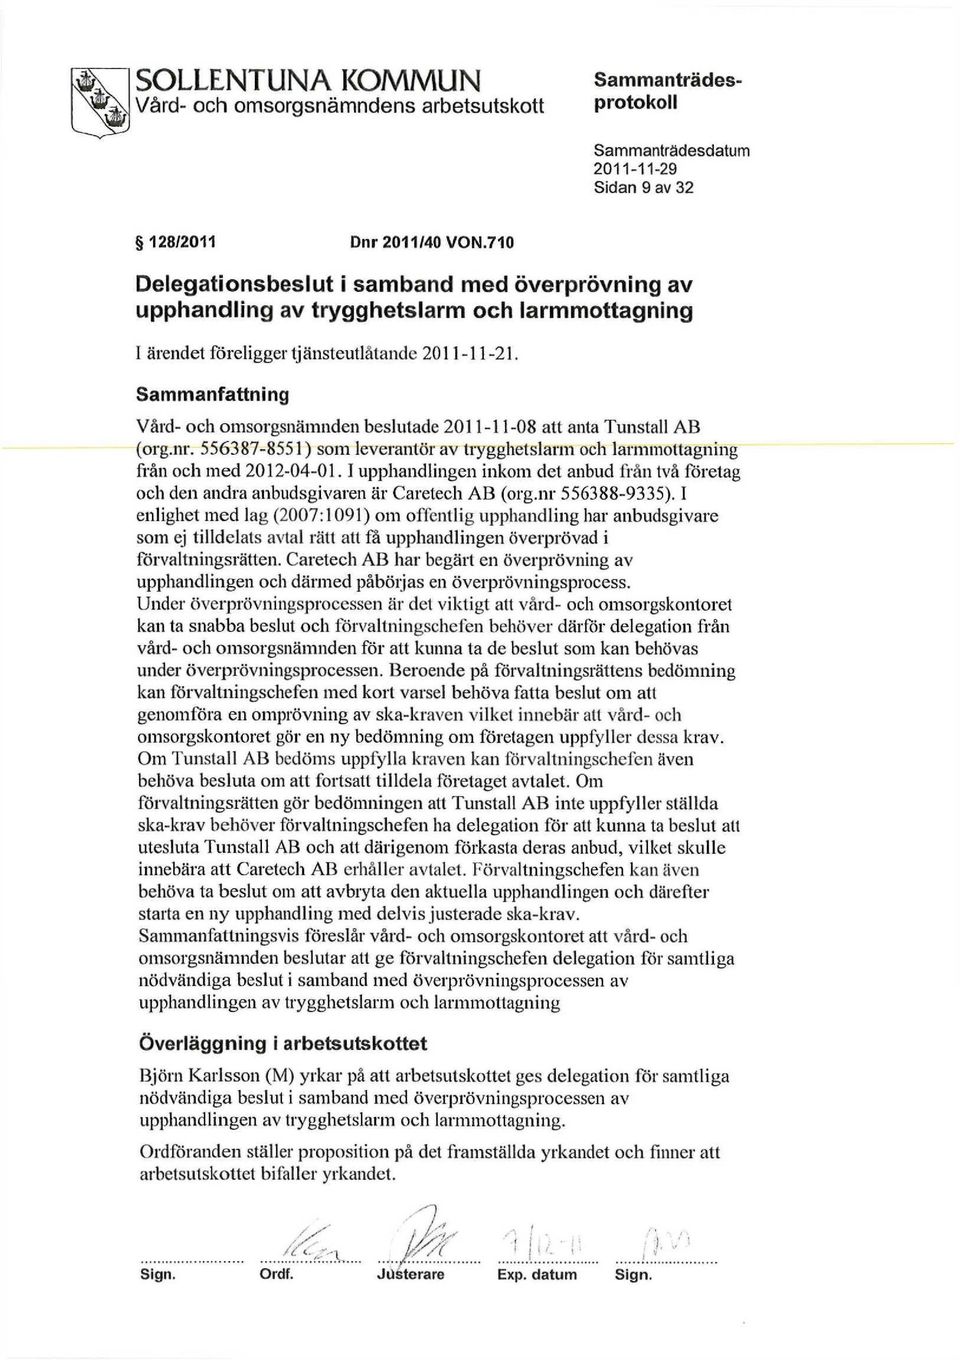 Sammanfattning Vård- och omsorgsnämnden beslutade 2011-11-08 att anta Tunstall AB (org.nr. 556387-8551) som leverantör av trygghetslarm och larmmottagning från och med 2012-04-01.